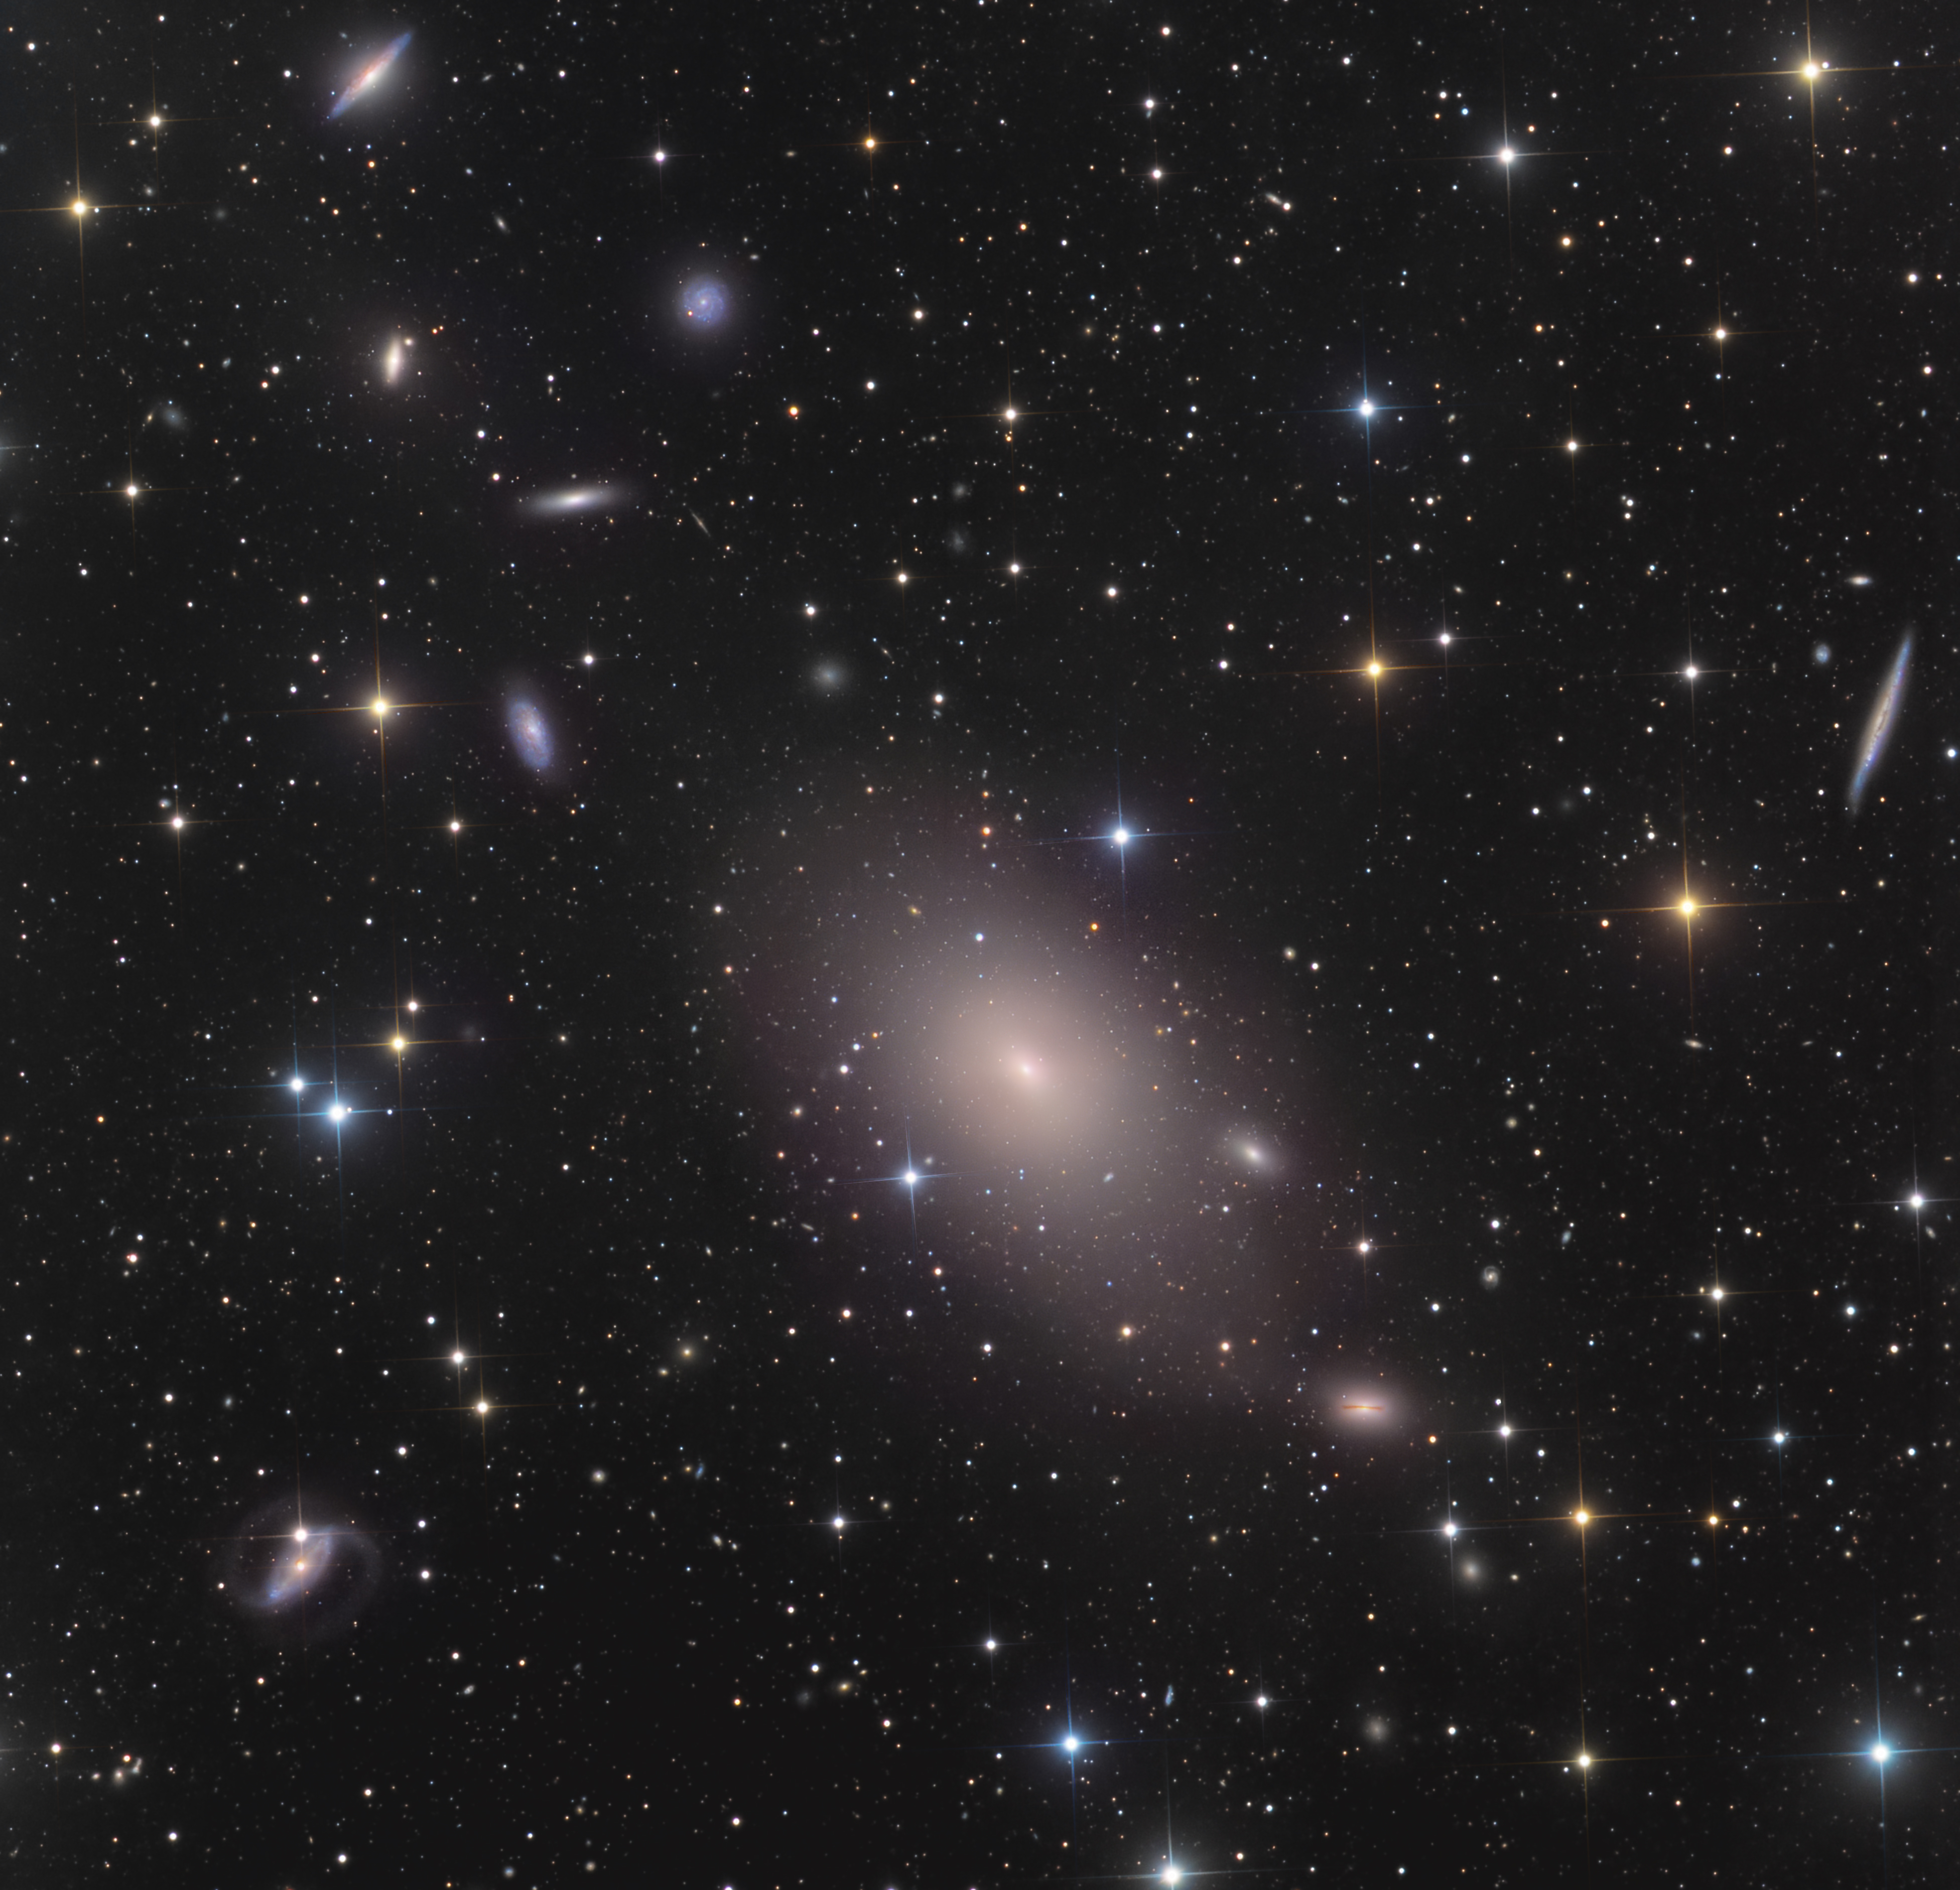 NGC 4365 